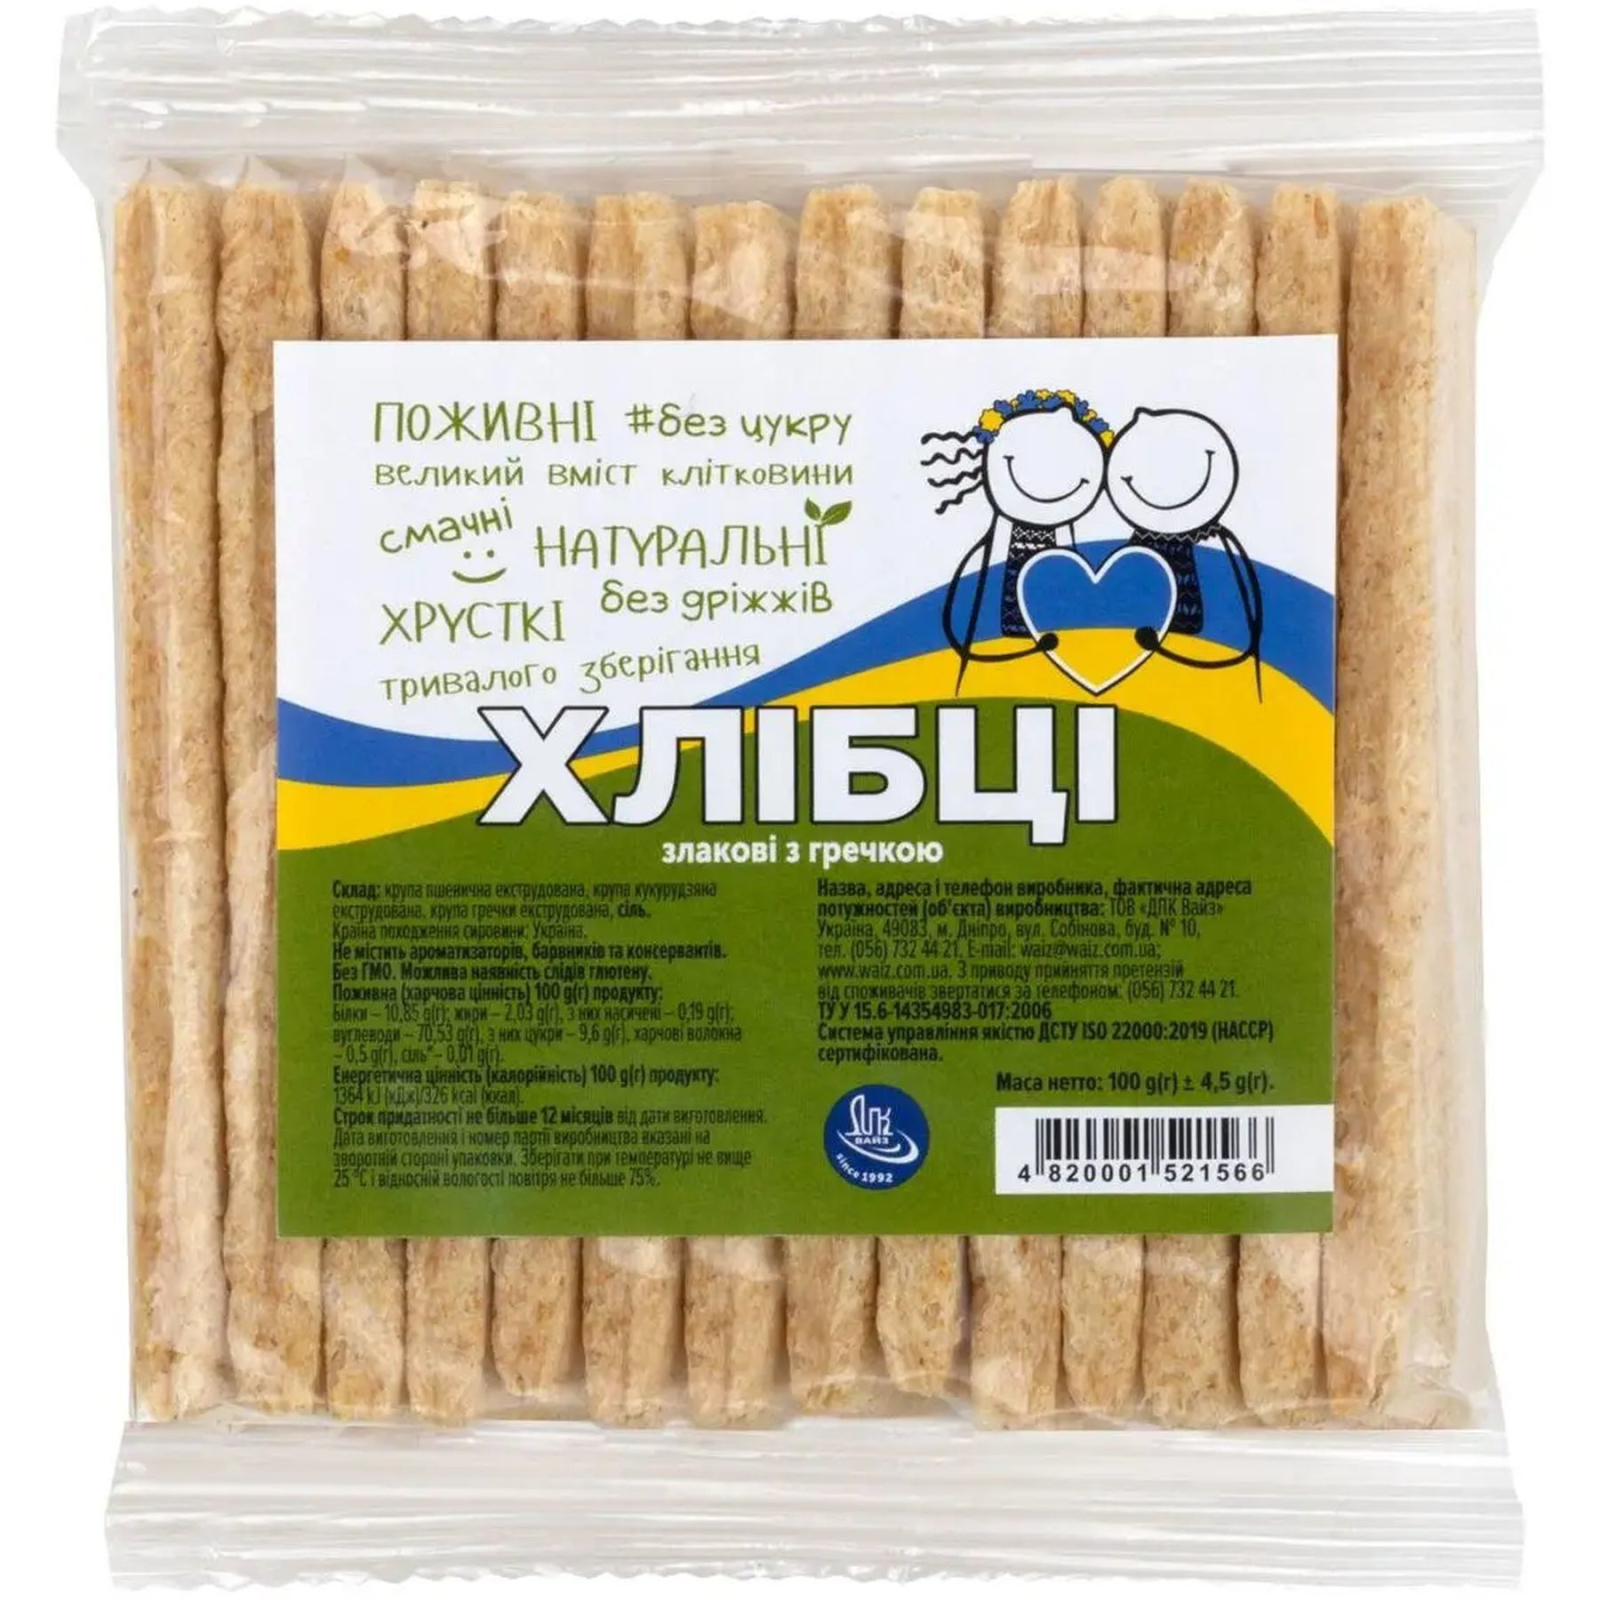 Хлібці ВАЙЗ злакові з гречкою 100 г (1181062)